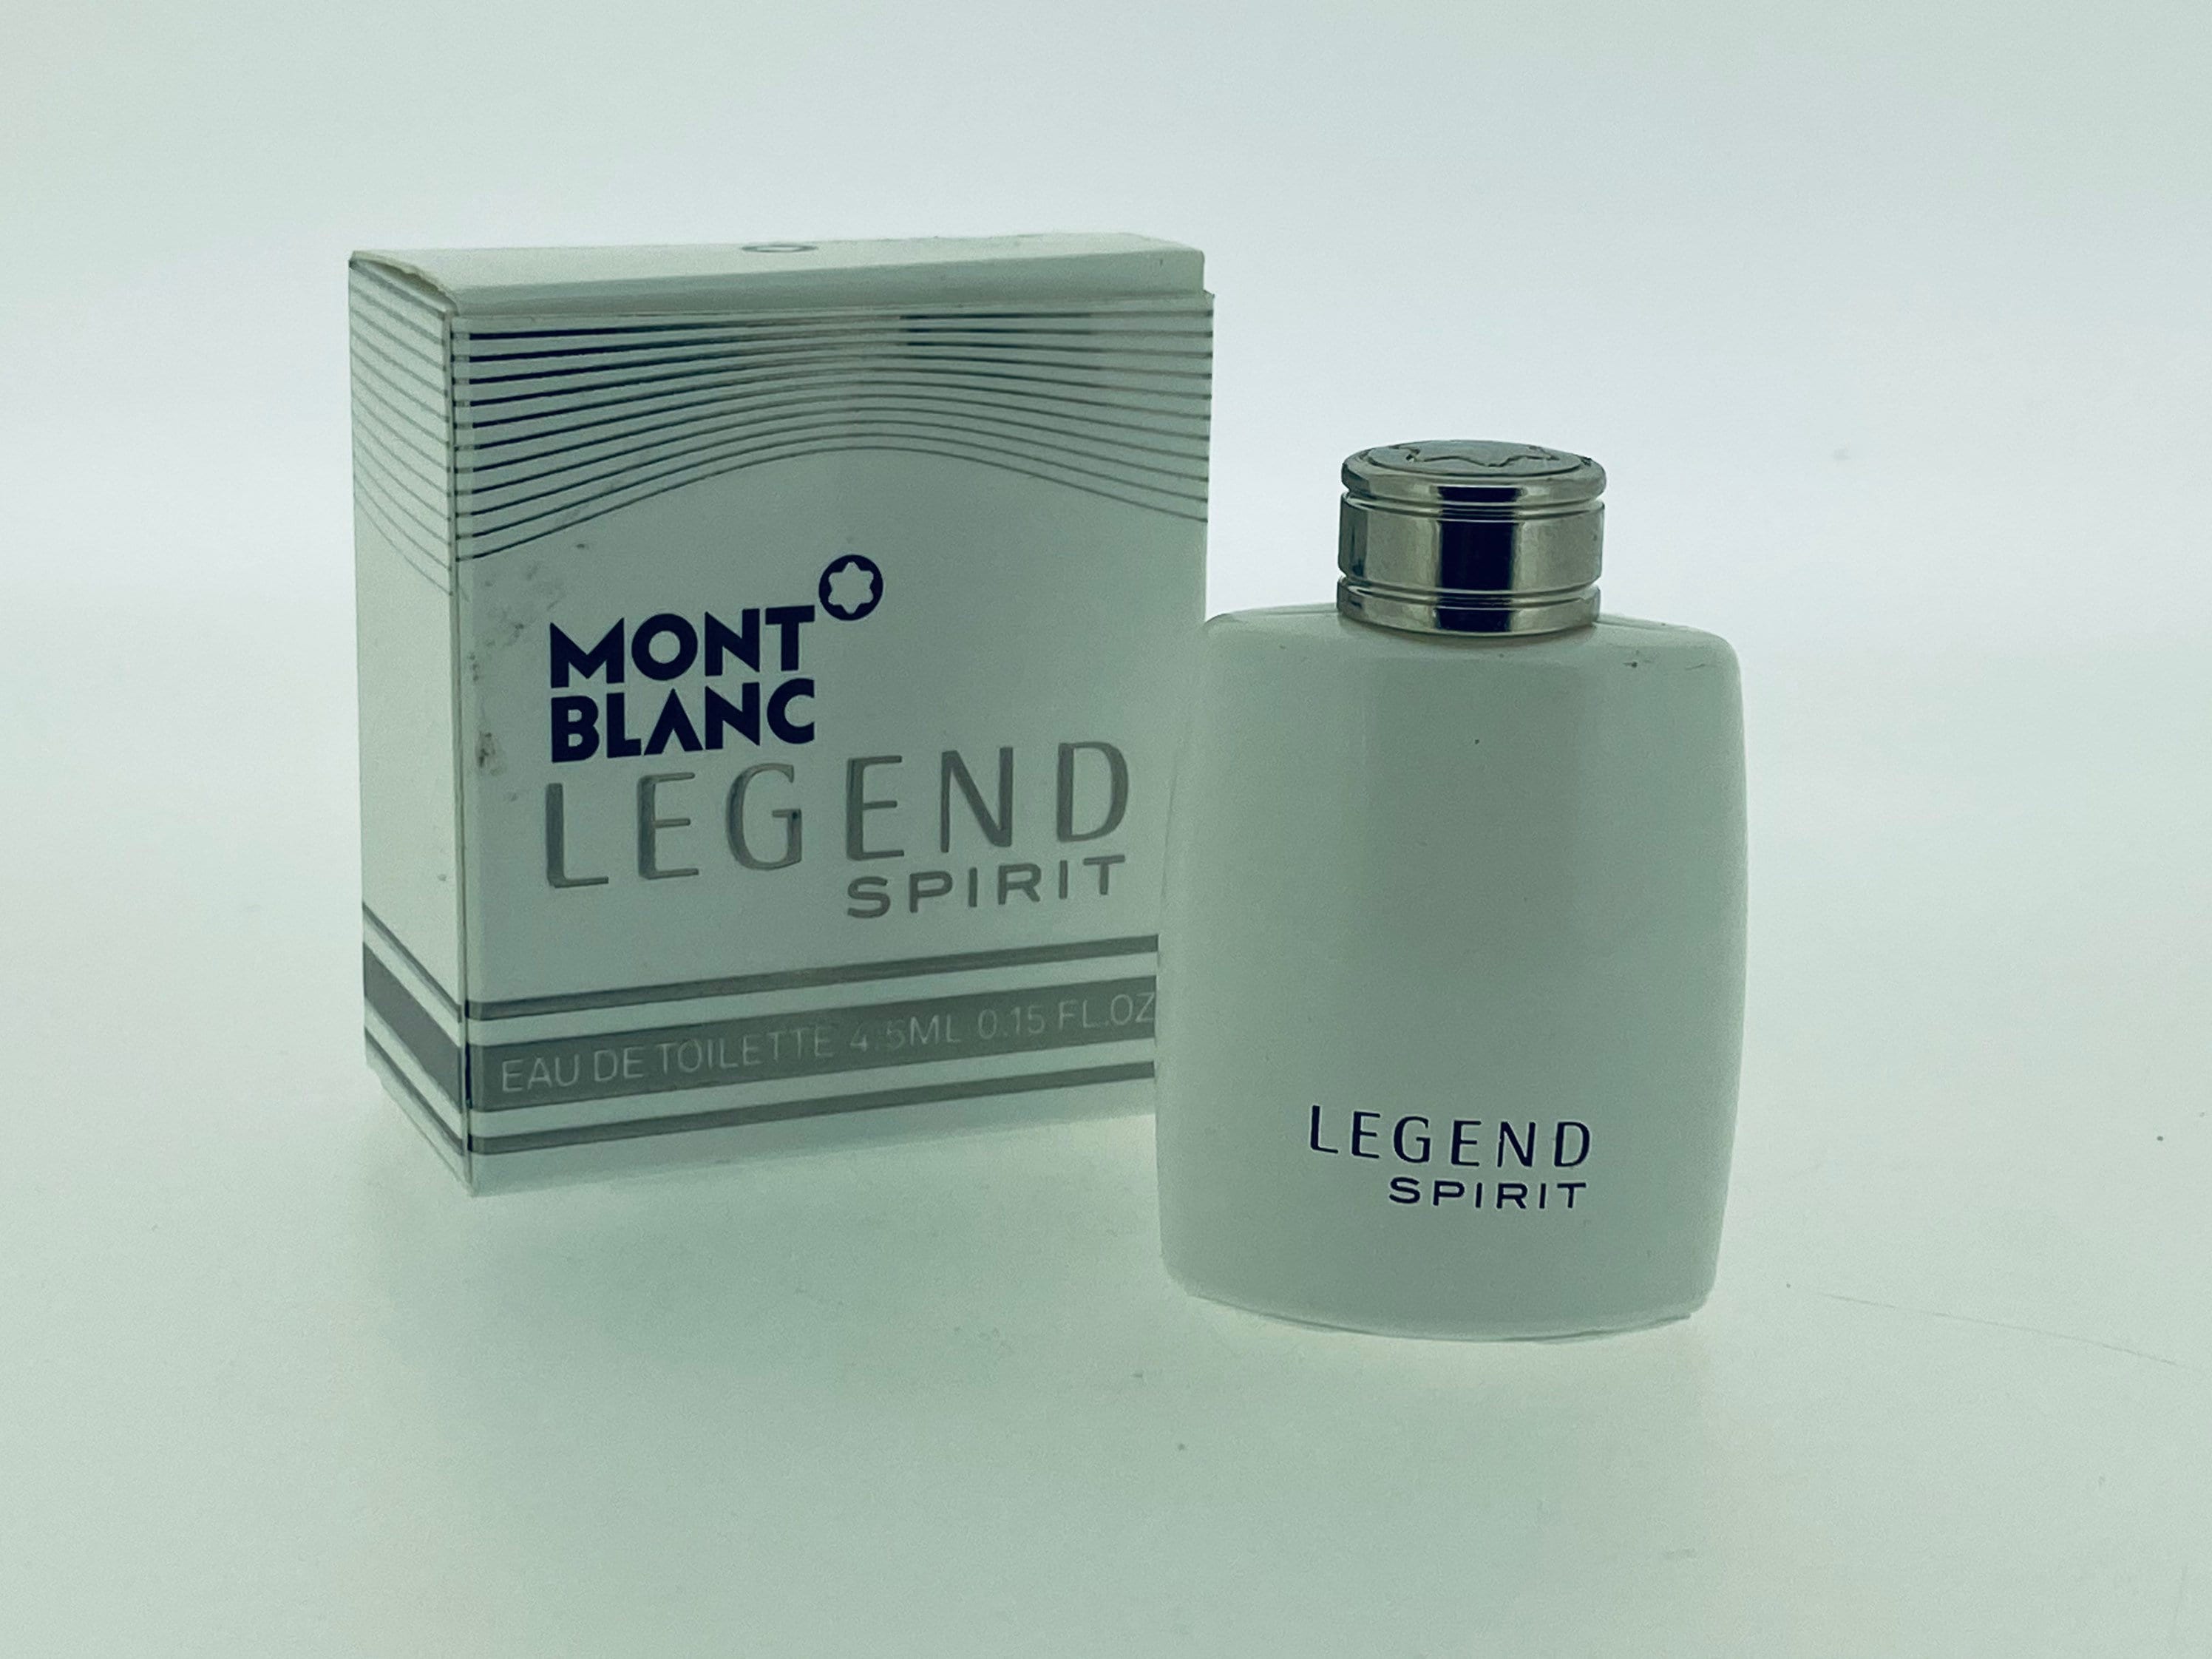 Legend Spirit Montblanc EAU DE TOILETTE Miniatur 4 ml - .de